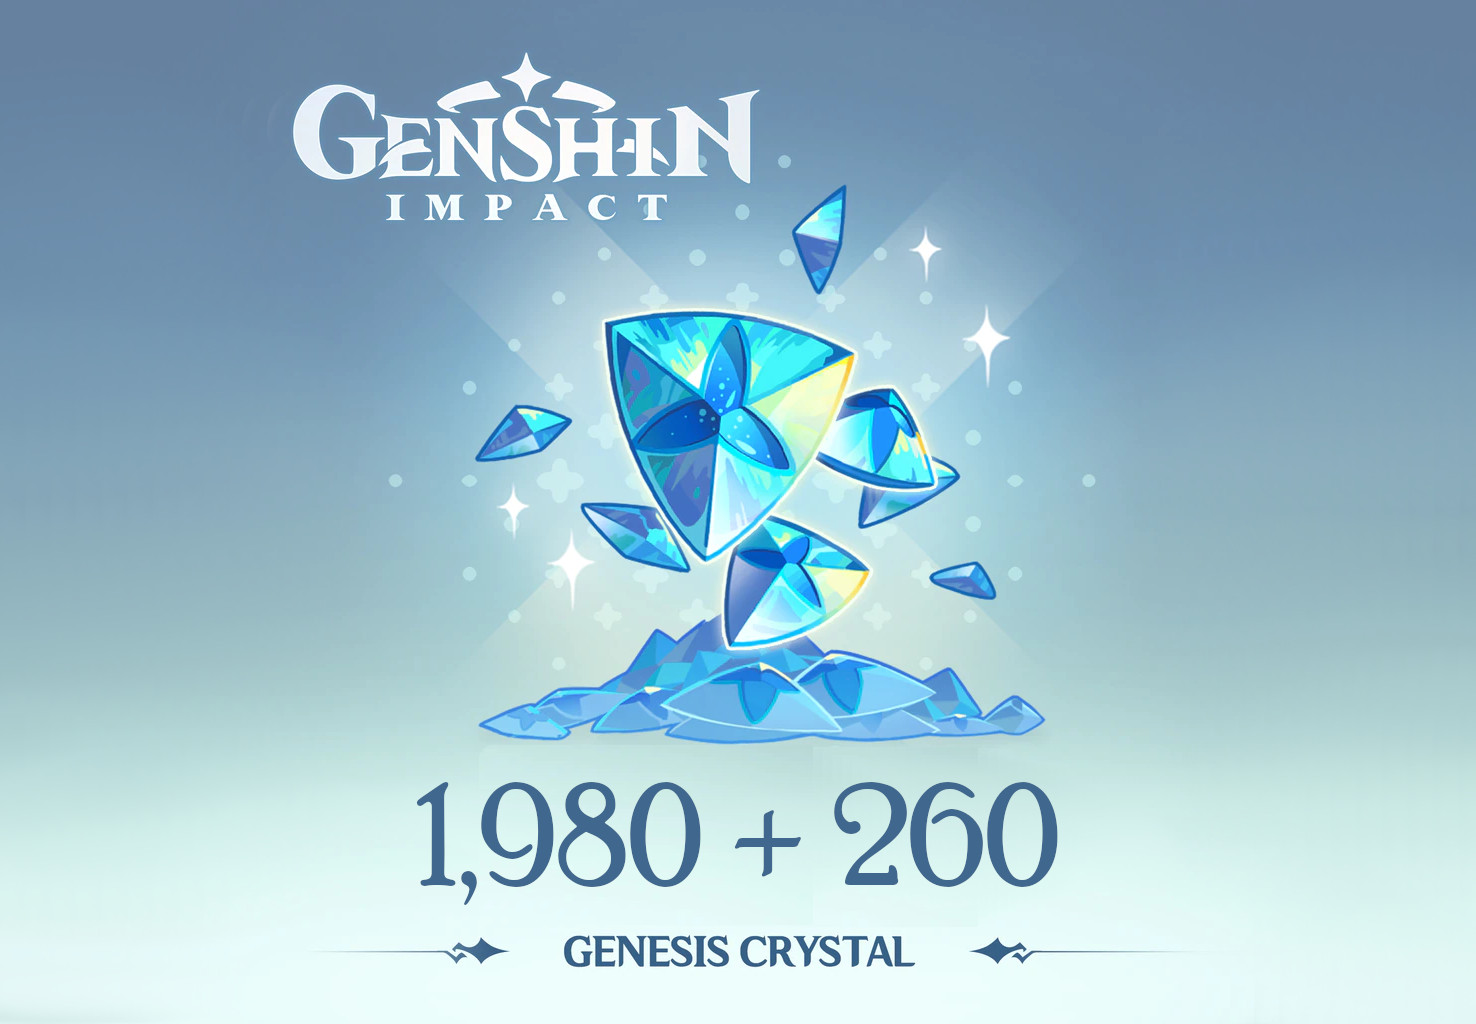 Genshin Impact - 1,980 + 260 Genesis Crystals Reidos Voucher 33.9 USD